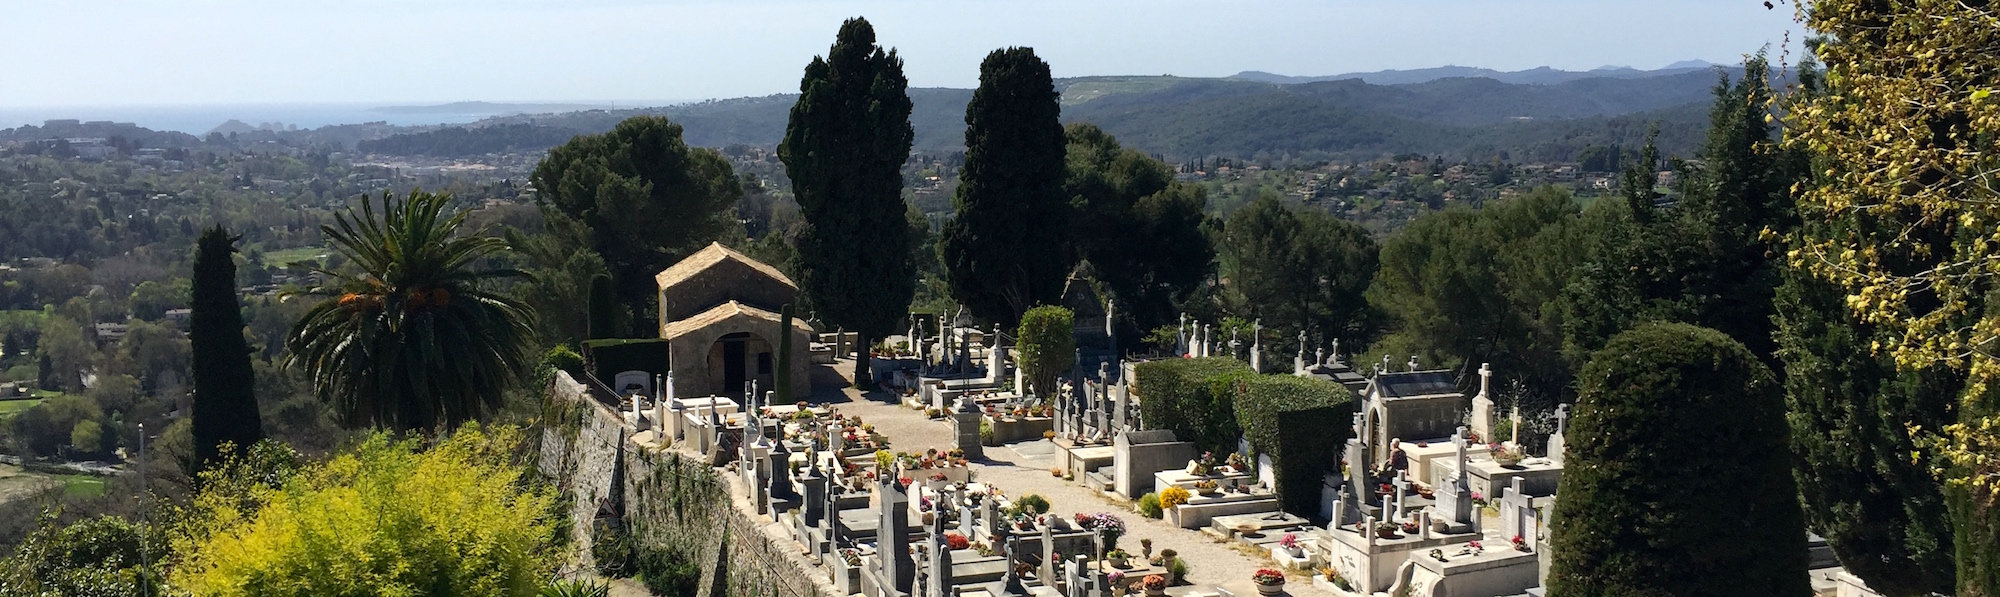 Mirador del Cementerio, Saint Paul